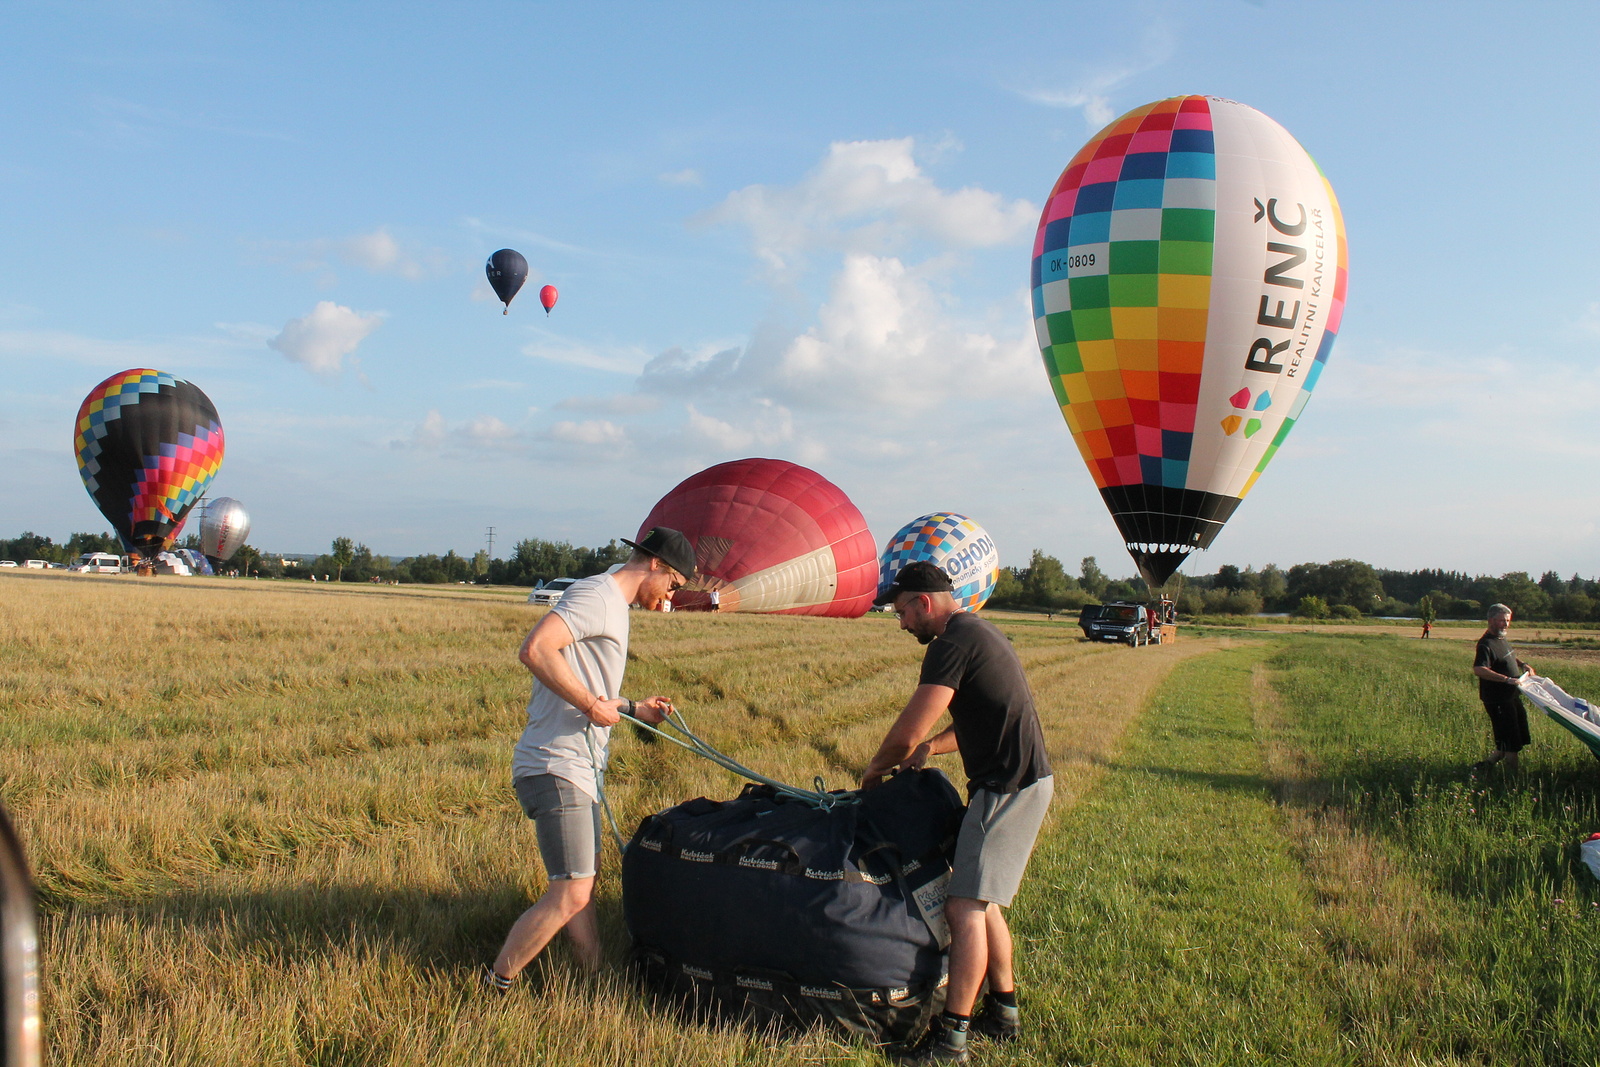 Večerní nebe nad Hradcem rozzářily balóny, piloti předvádějí svojí  šikovnost - Českobudějovický deník